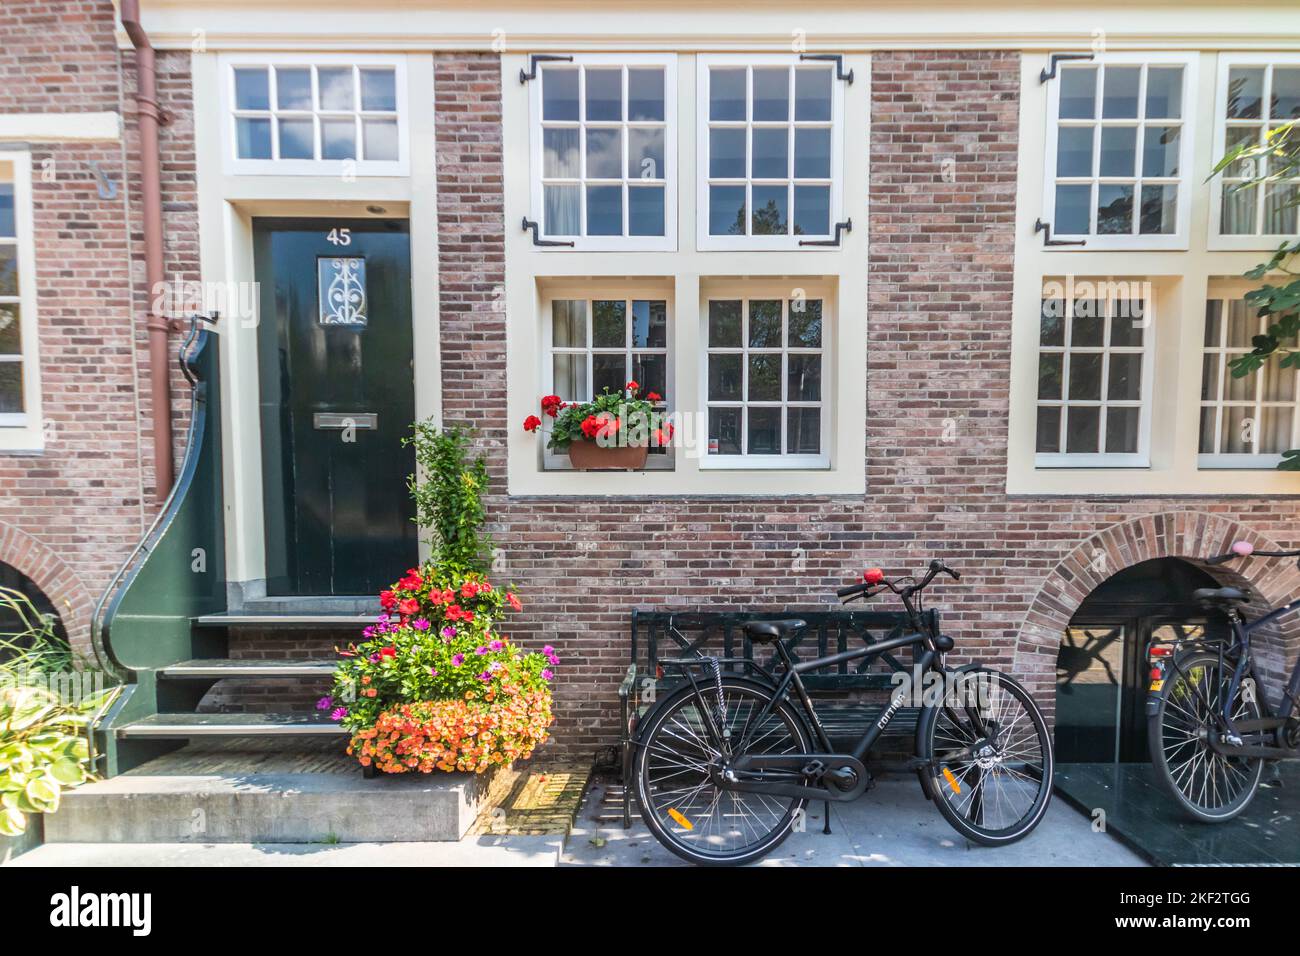 Maison sur le Brouwersgracht, Amsterdam, pays-Bas Banque D'Images